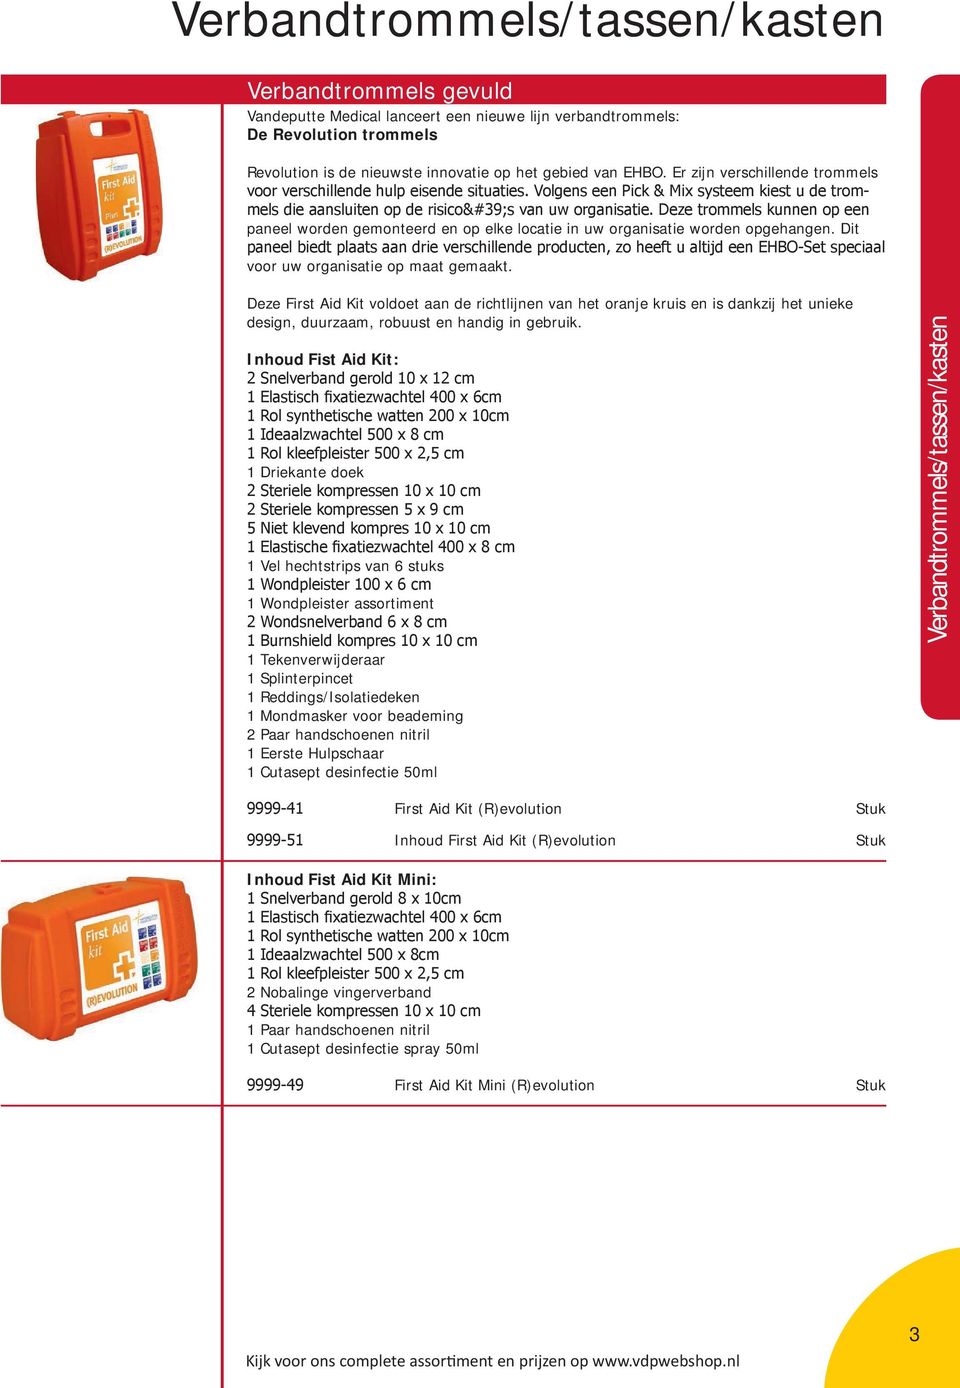 Deze First Aid Kit voldoet aan de richtlijnen van het oranje kruis en is dankzij het unieke design, duurzaam, robuust en handig in gebruik.